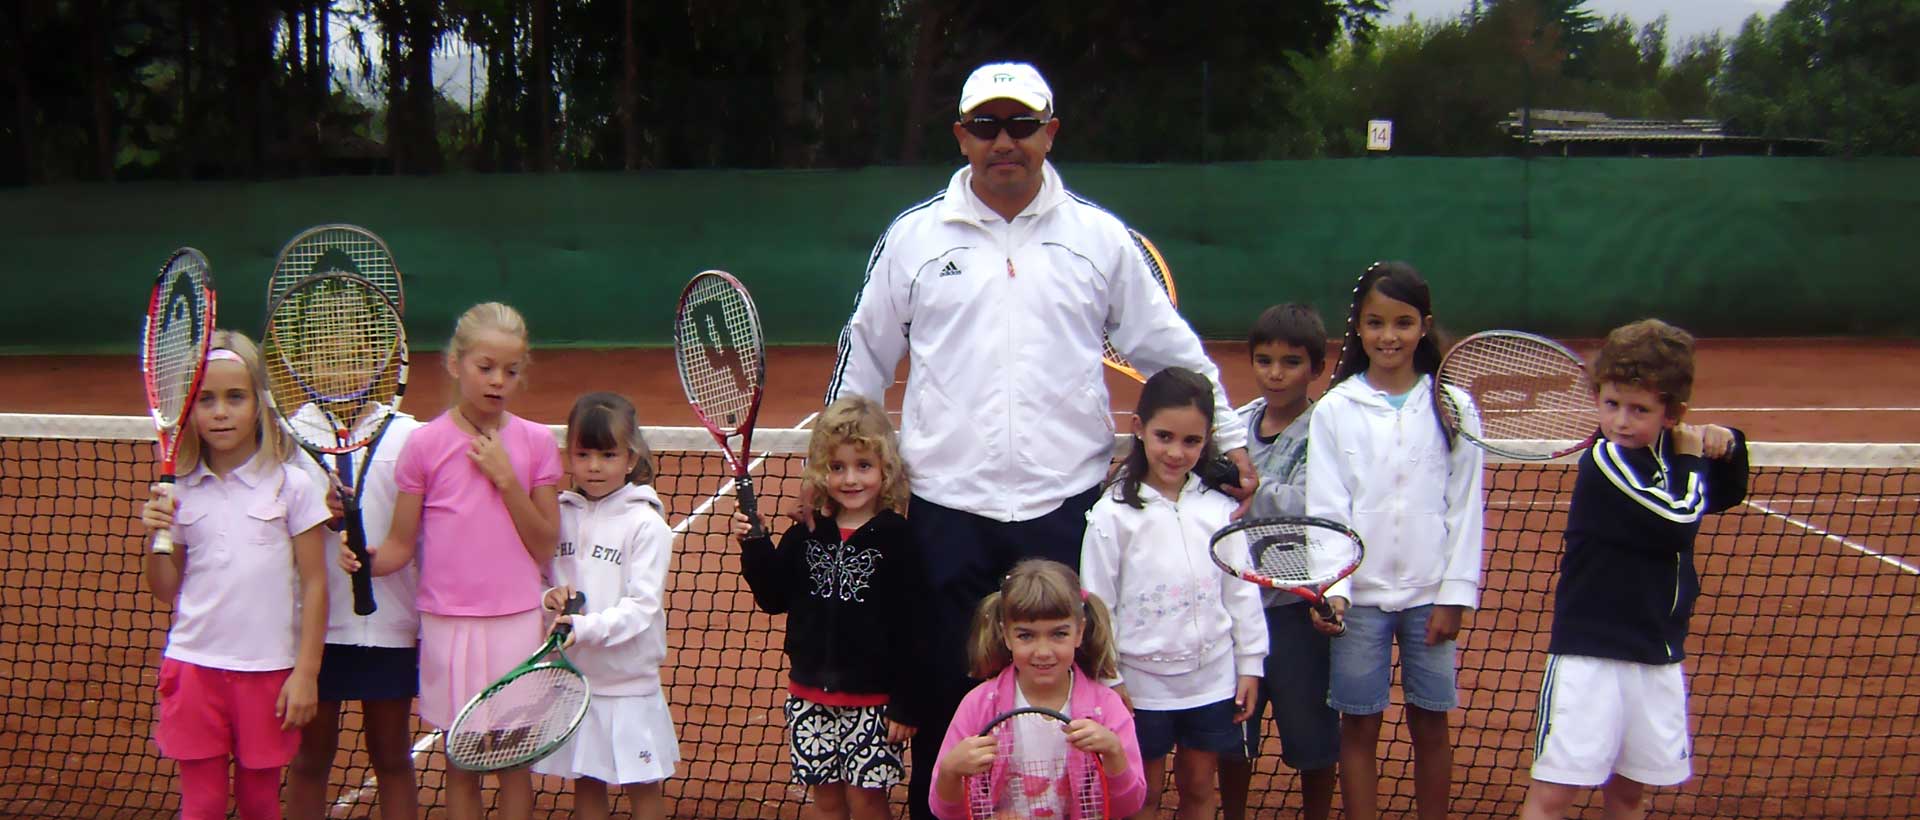 El tenis hace<br>niños felices